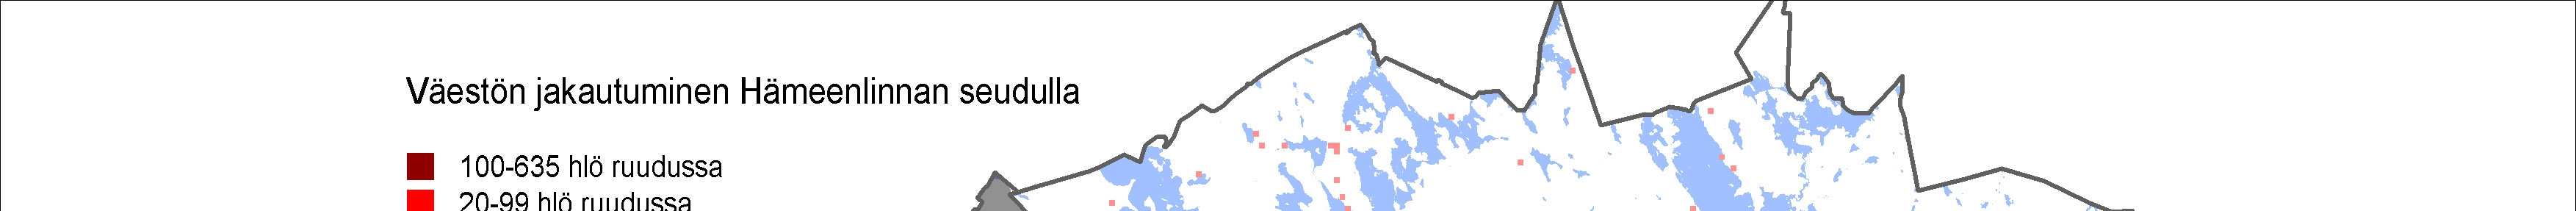 KUVA 2 Uusi Hämeenlinna koostuu erilaisista alueista.